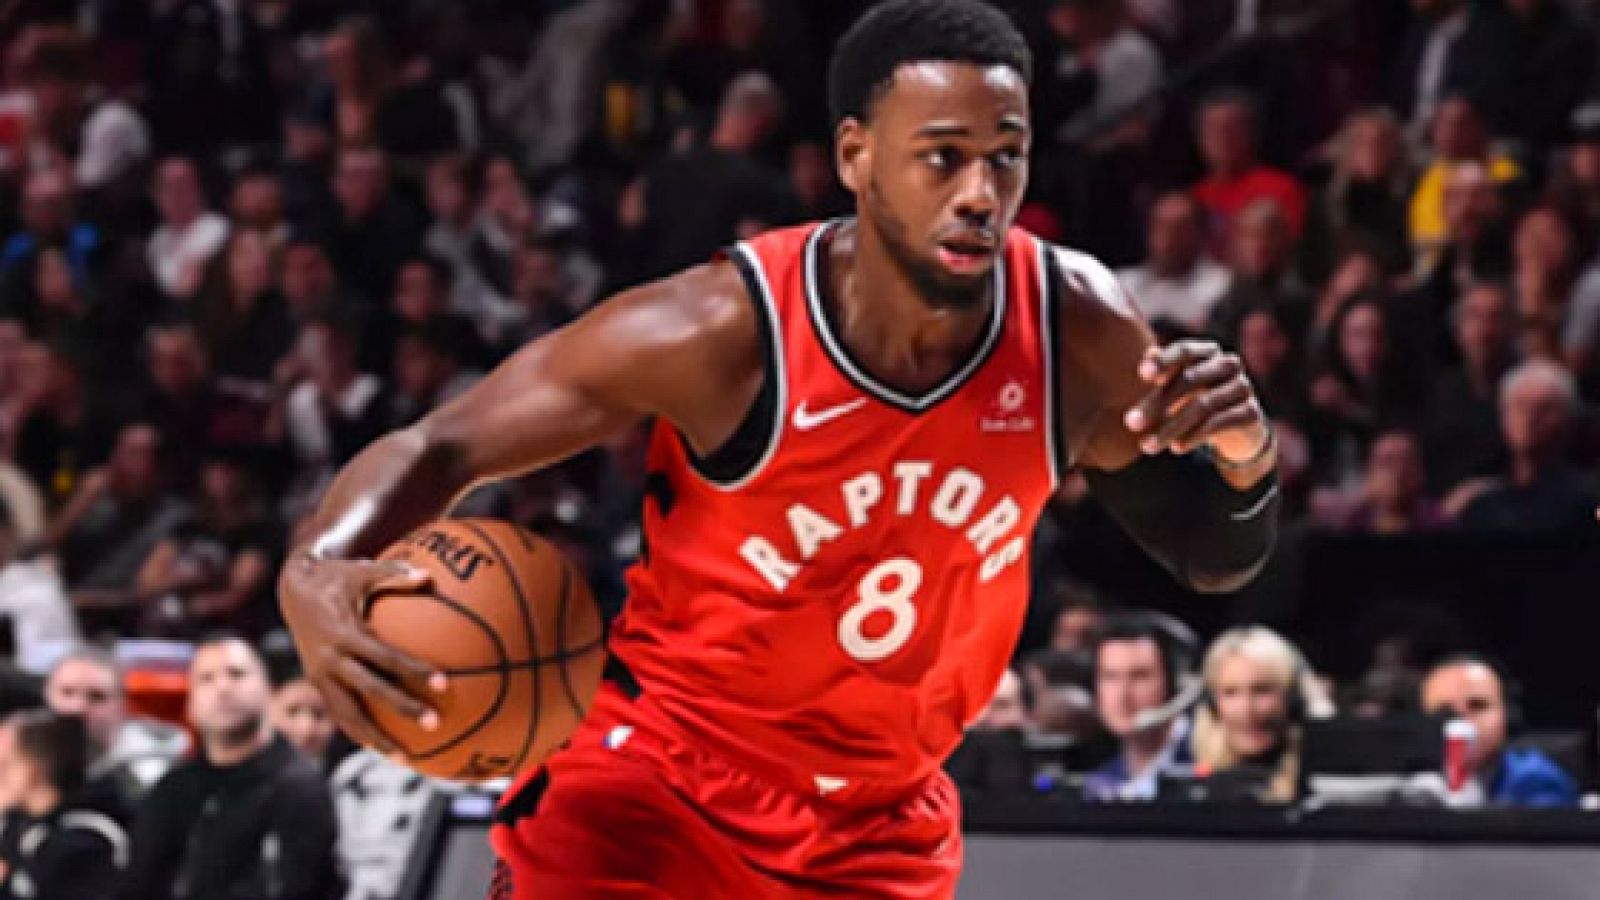 El Valencia Basket ha fichado al estadounidense Jordan Loyd, que la pasada temporada formó parte de los Toronto Raptors, campeones de la NBA.